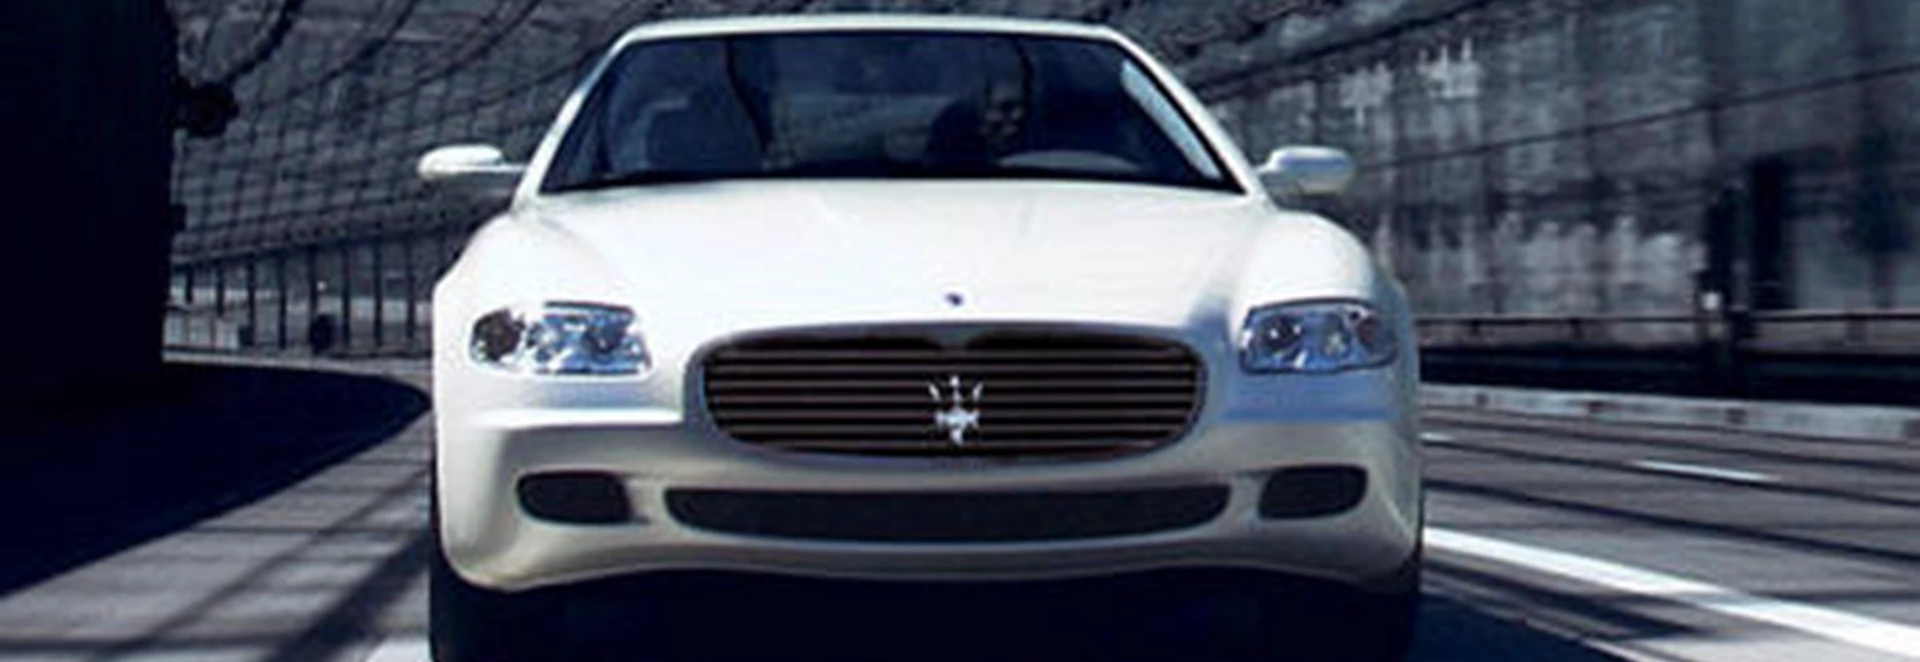 Maserati Quattroporte Automatic (2007) 